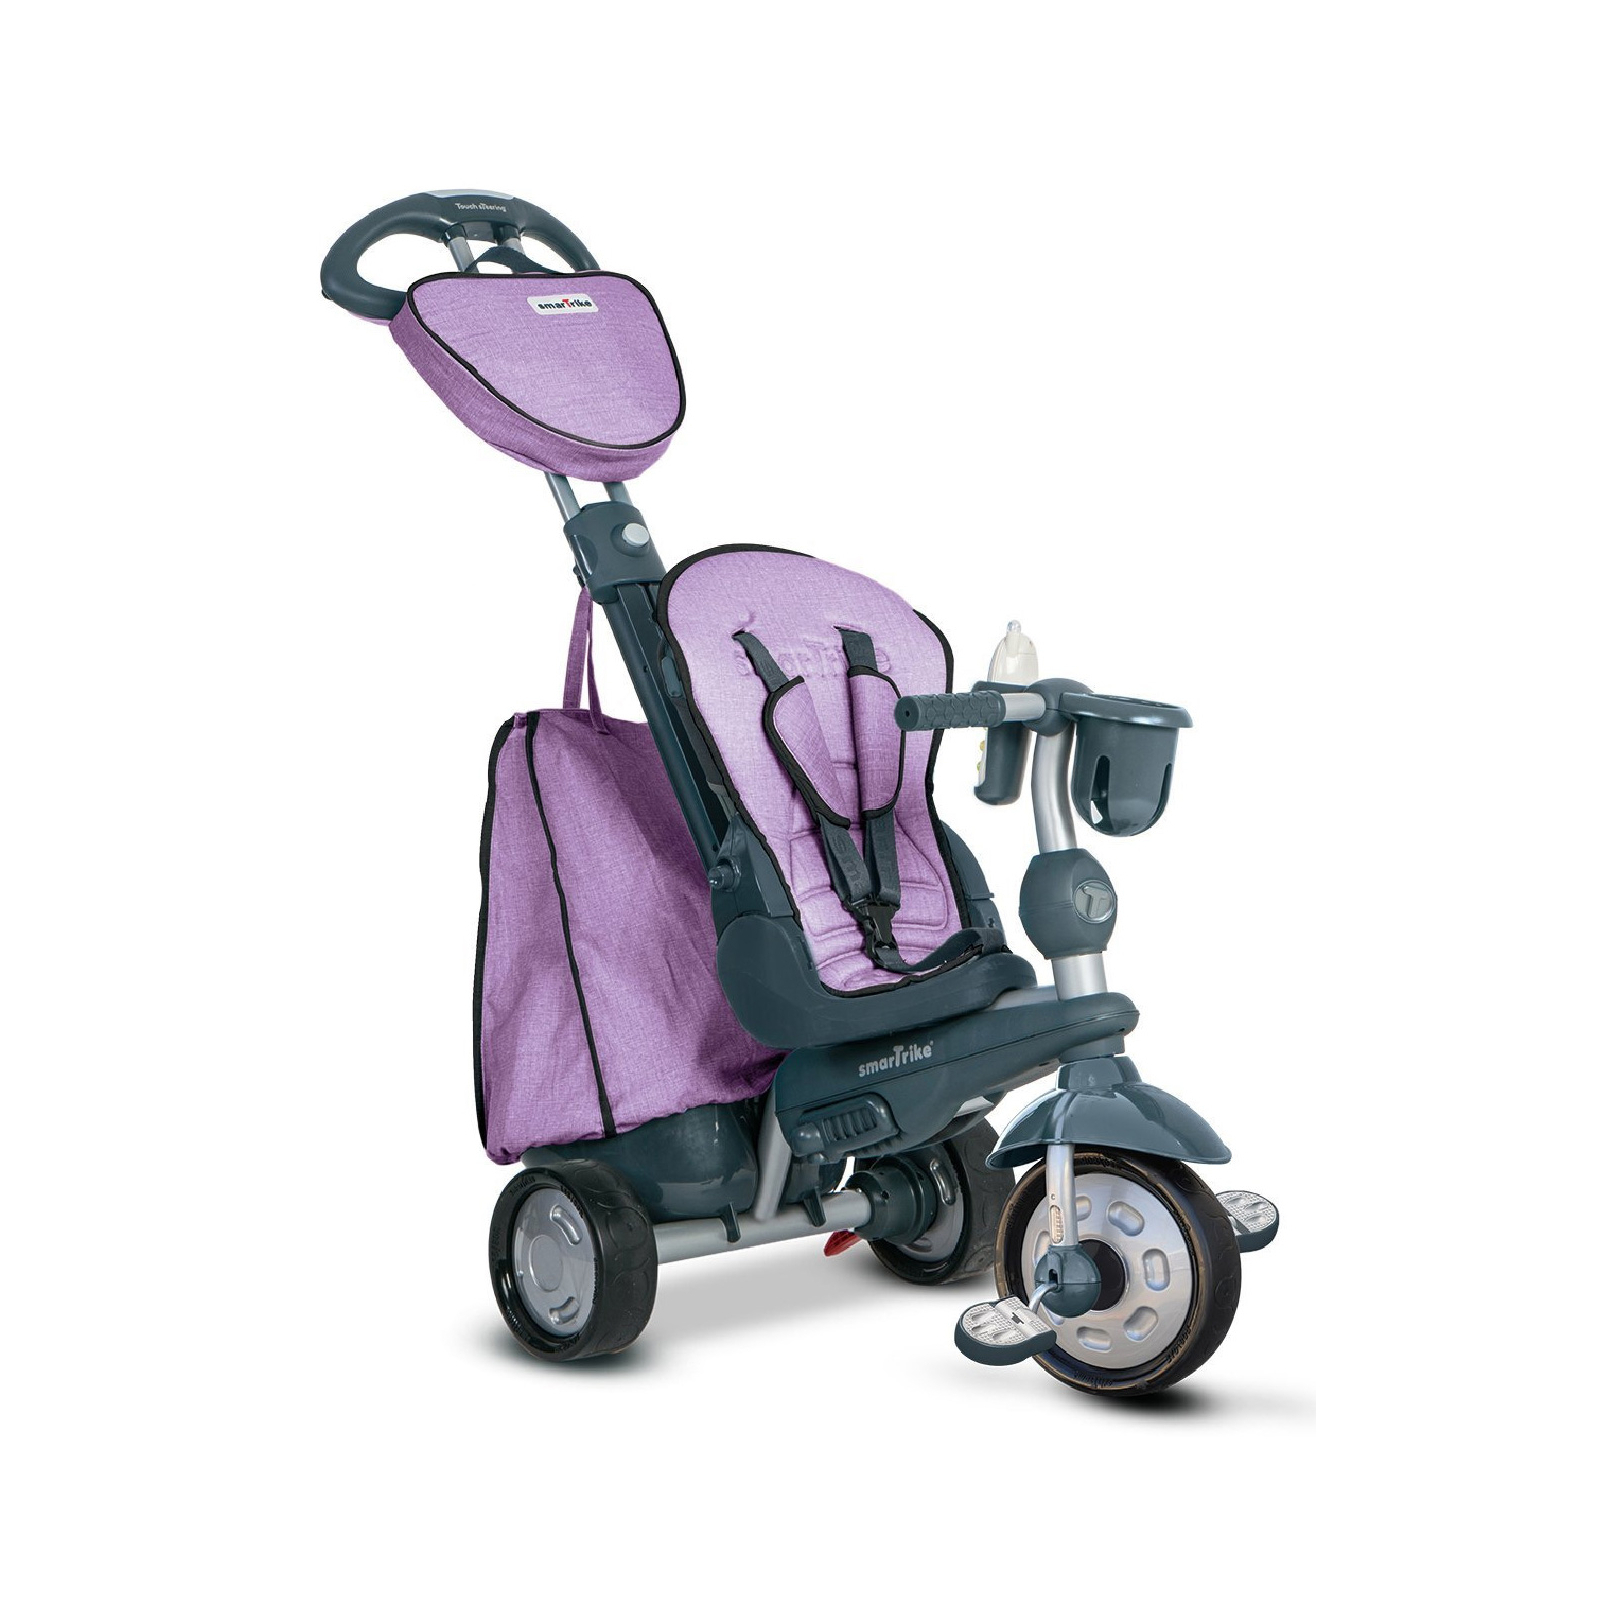 Детский велосипед Smart Trike Explorer 5 в 1 Purple (8201200) изображение 4